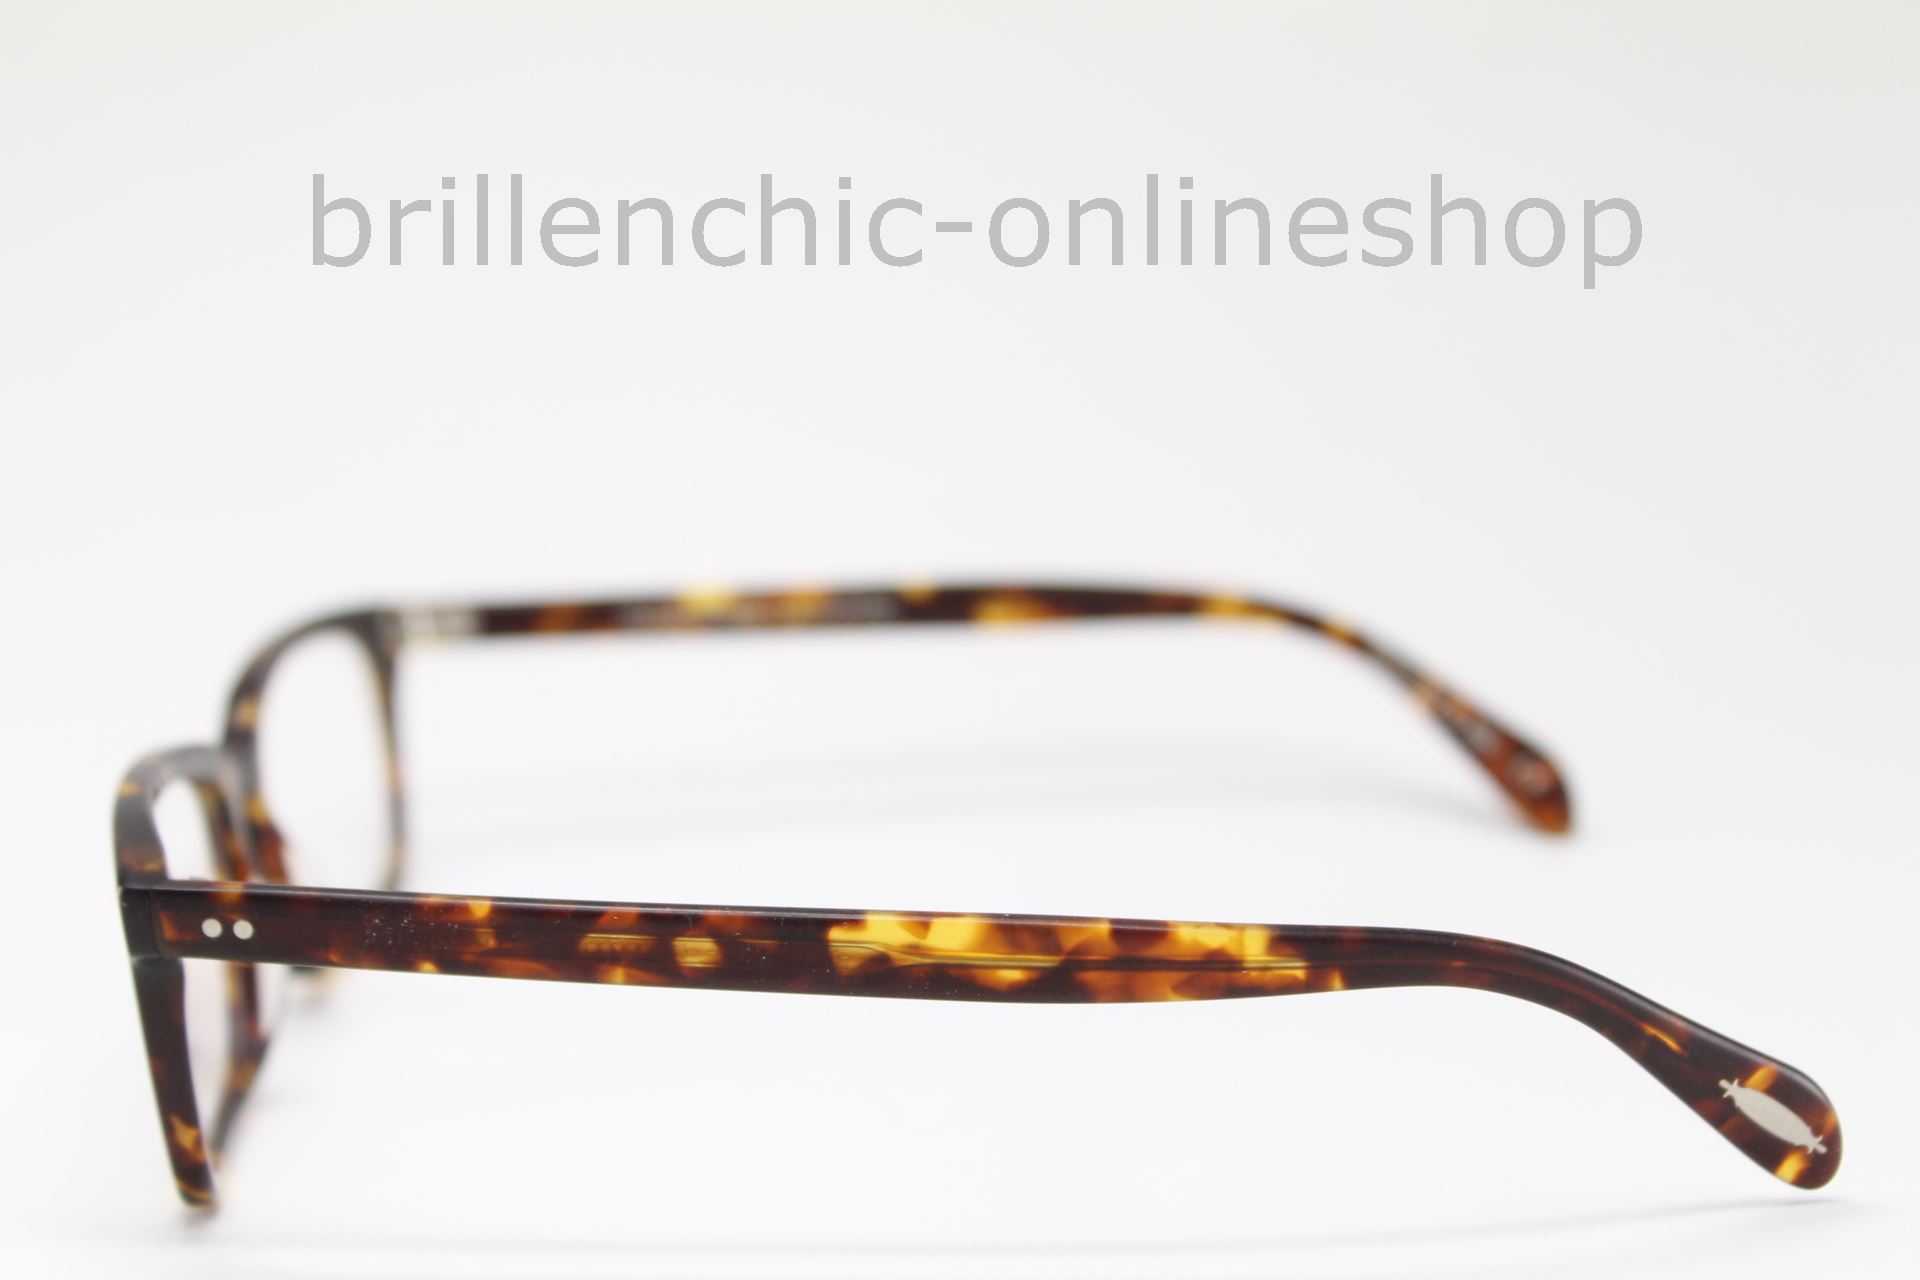 Brillenchic - onlineshop Berlin Ihr starker Partner für exklusive Brillen  online kaufen/OLIVER PEOPLES DENISON OV 5102 1659 exklusiv im  Brillenchic-Onlineshop